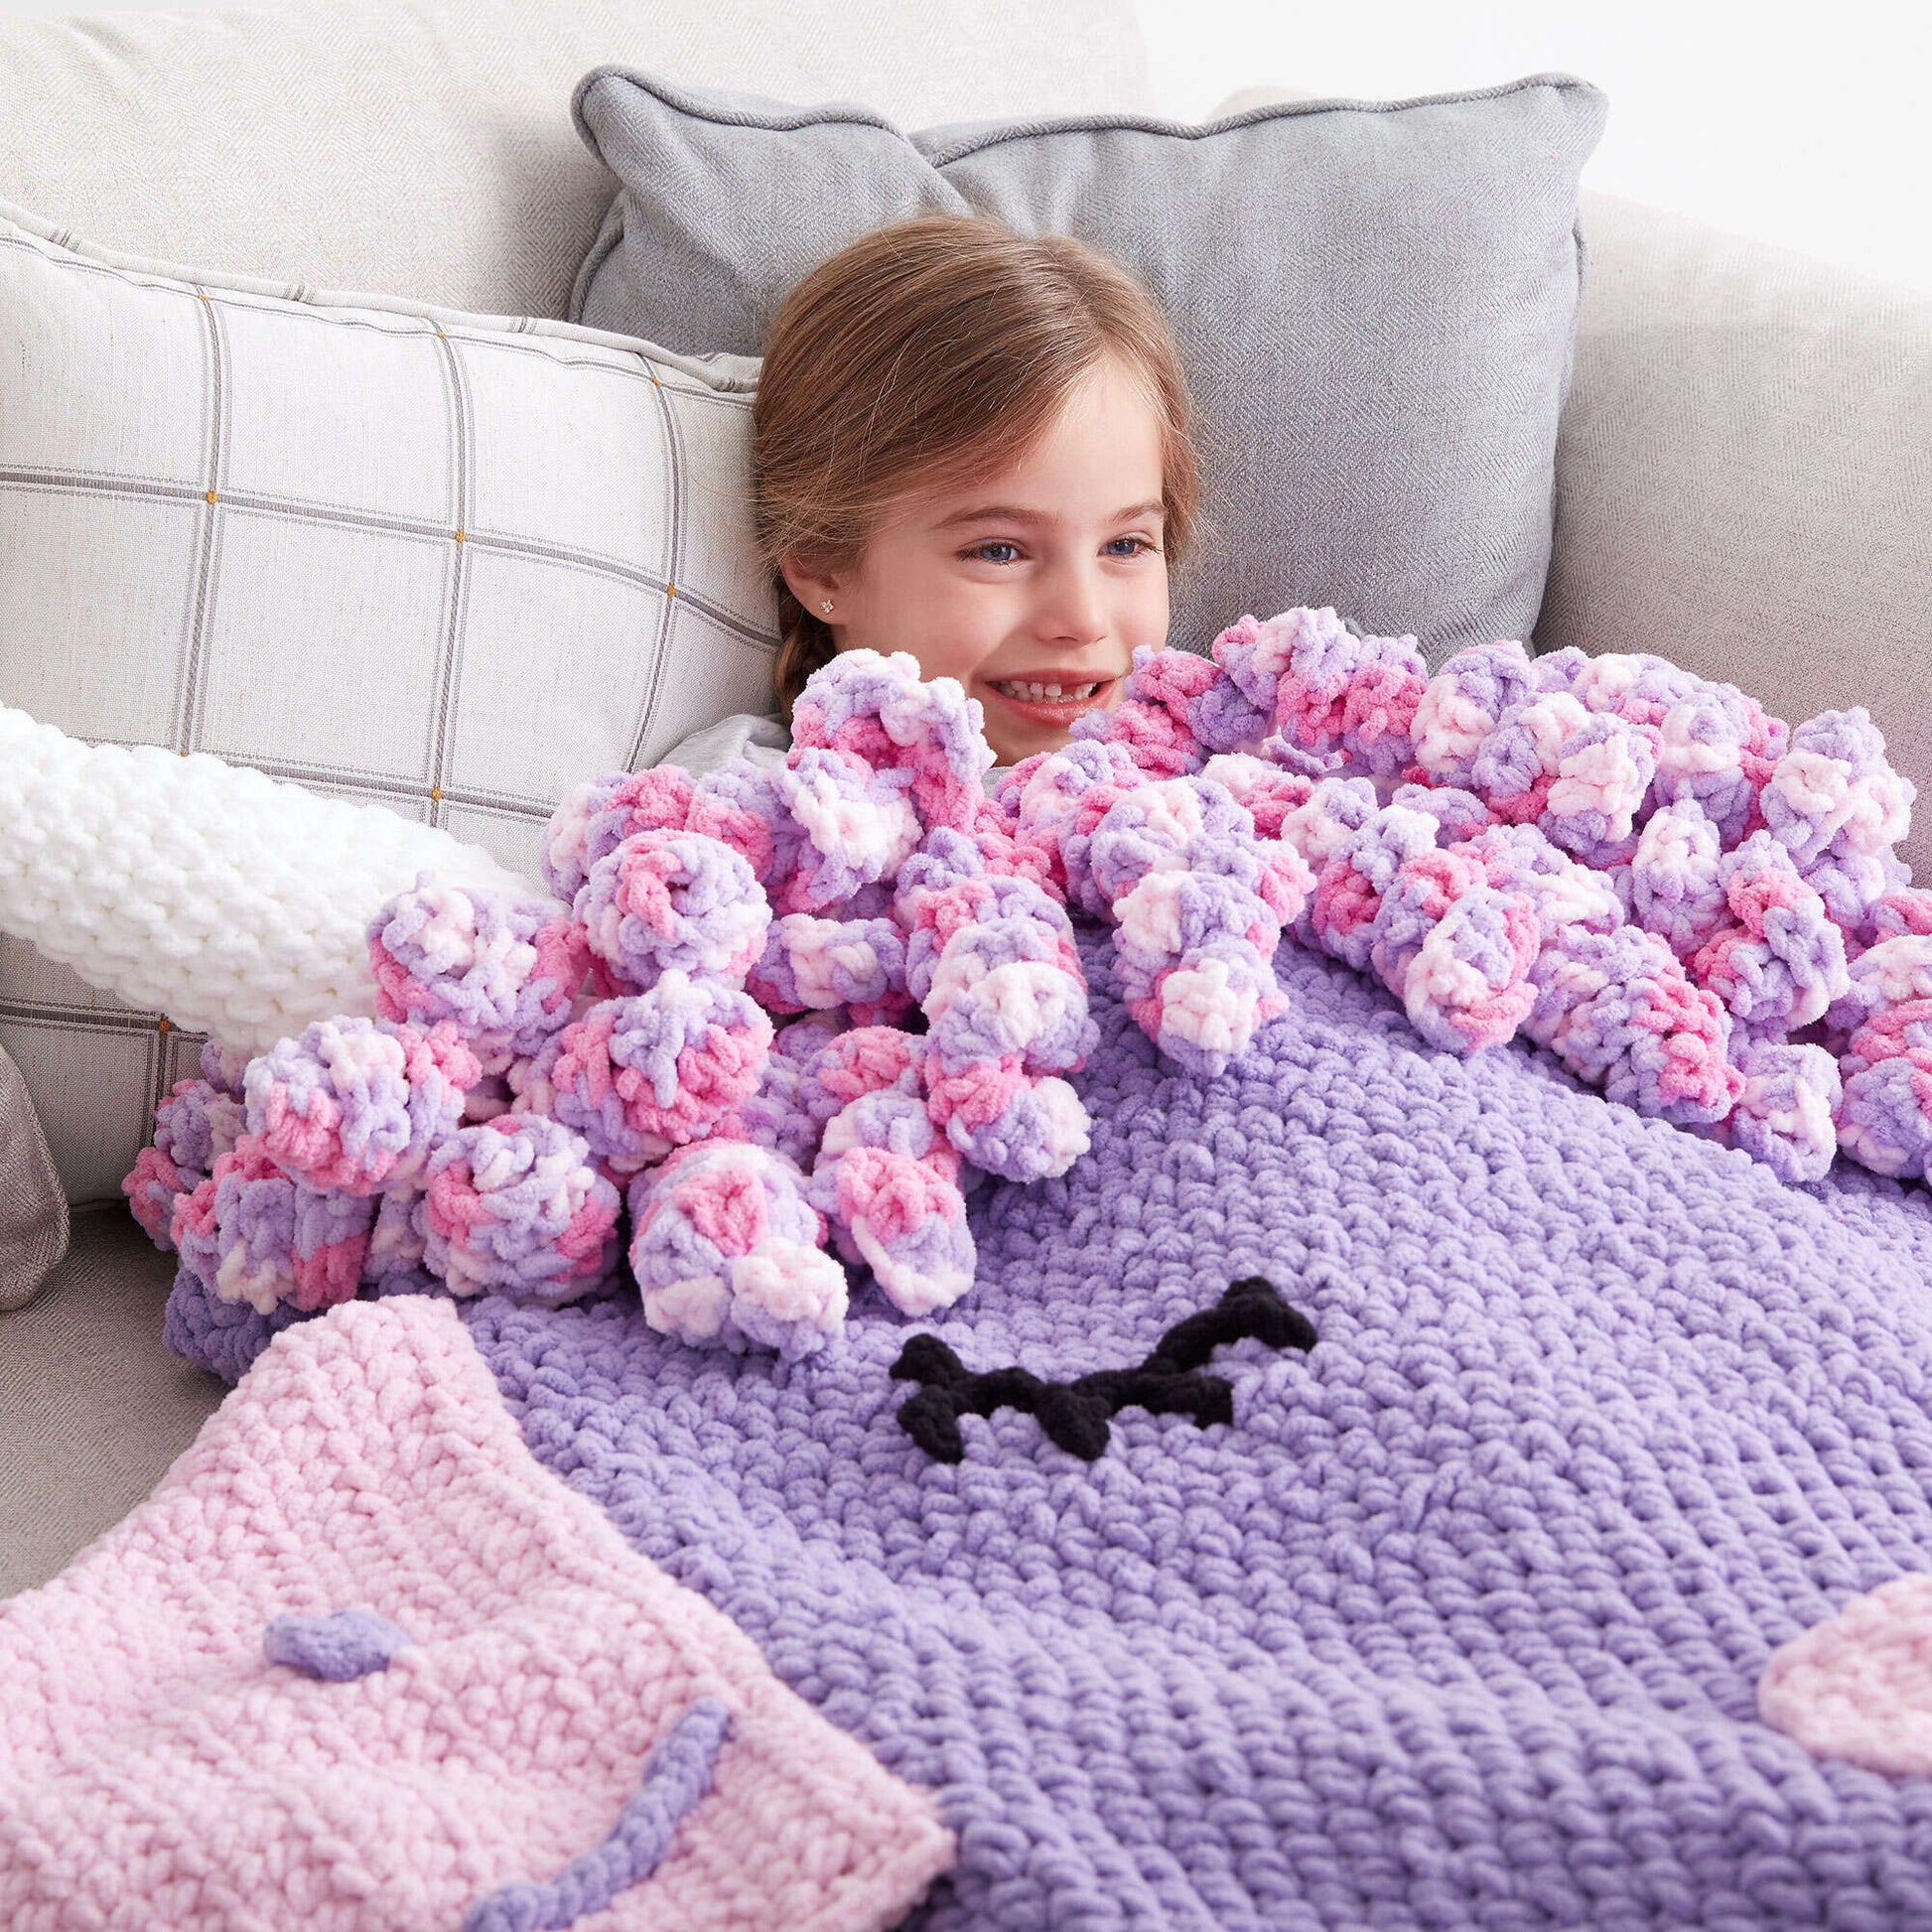 Bernat Crochet Unicorn Snuggle Sack Crochet Blanket made in Bernat Baby Blanket yarn